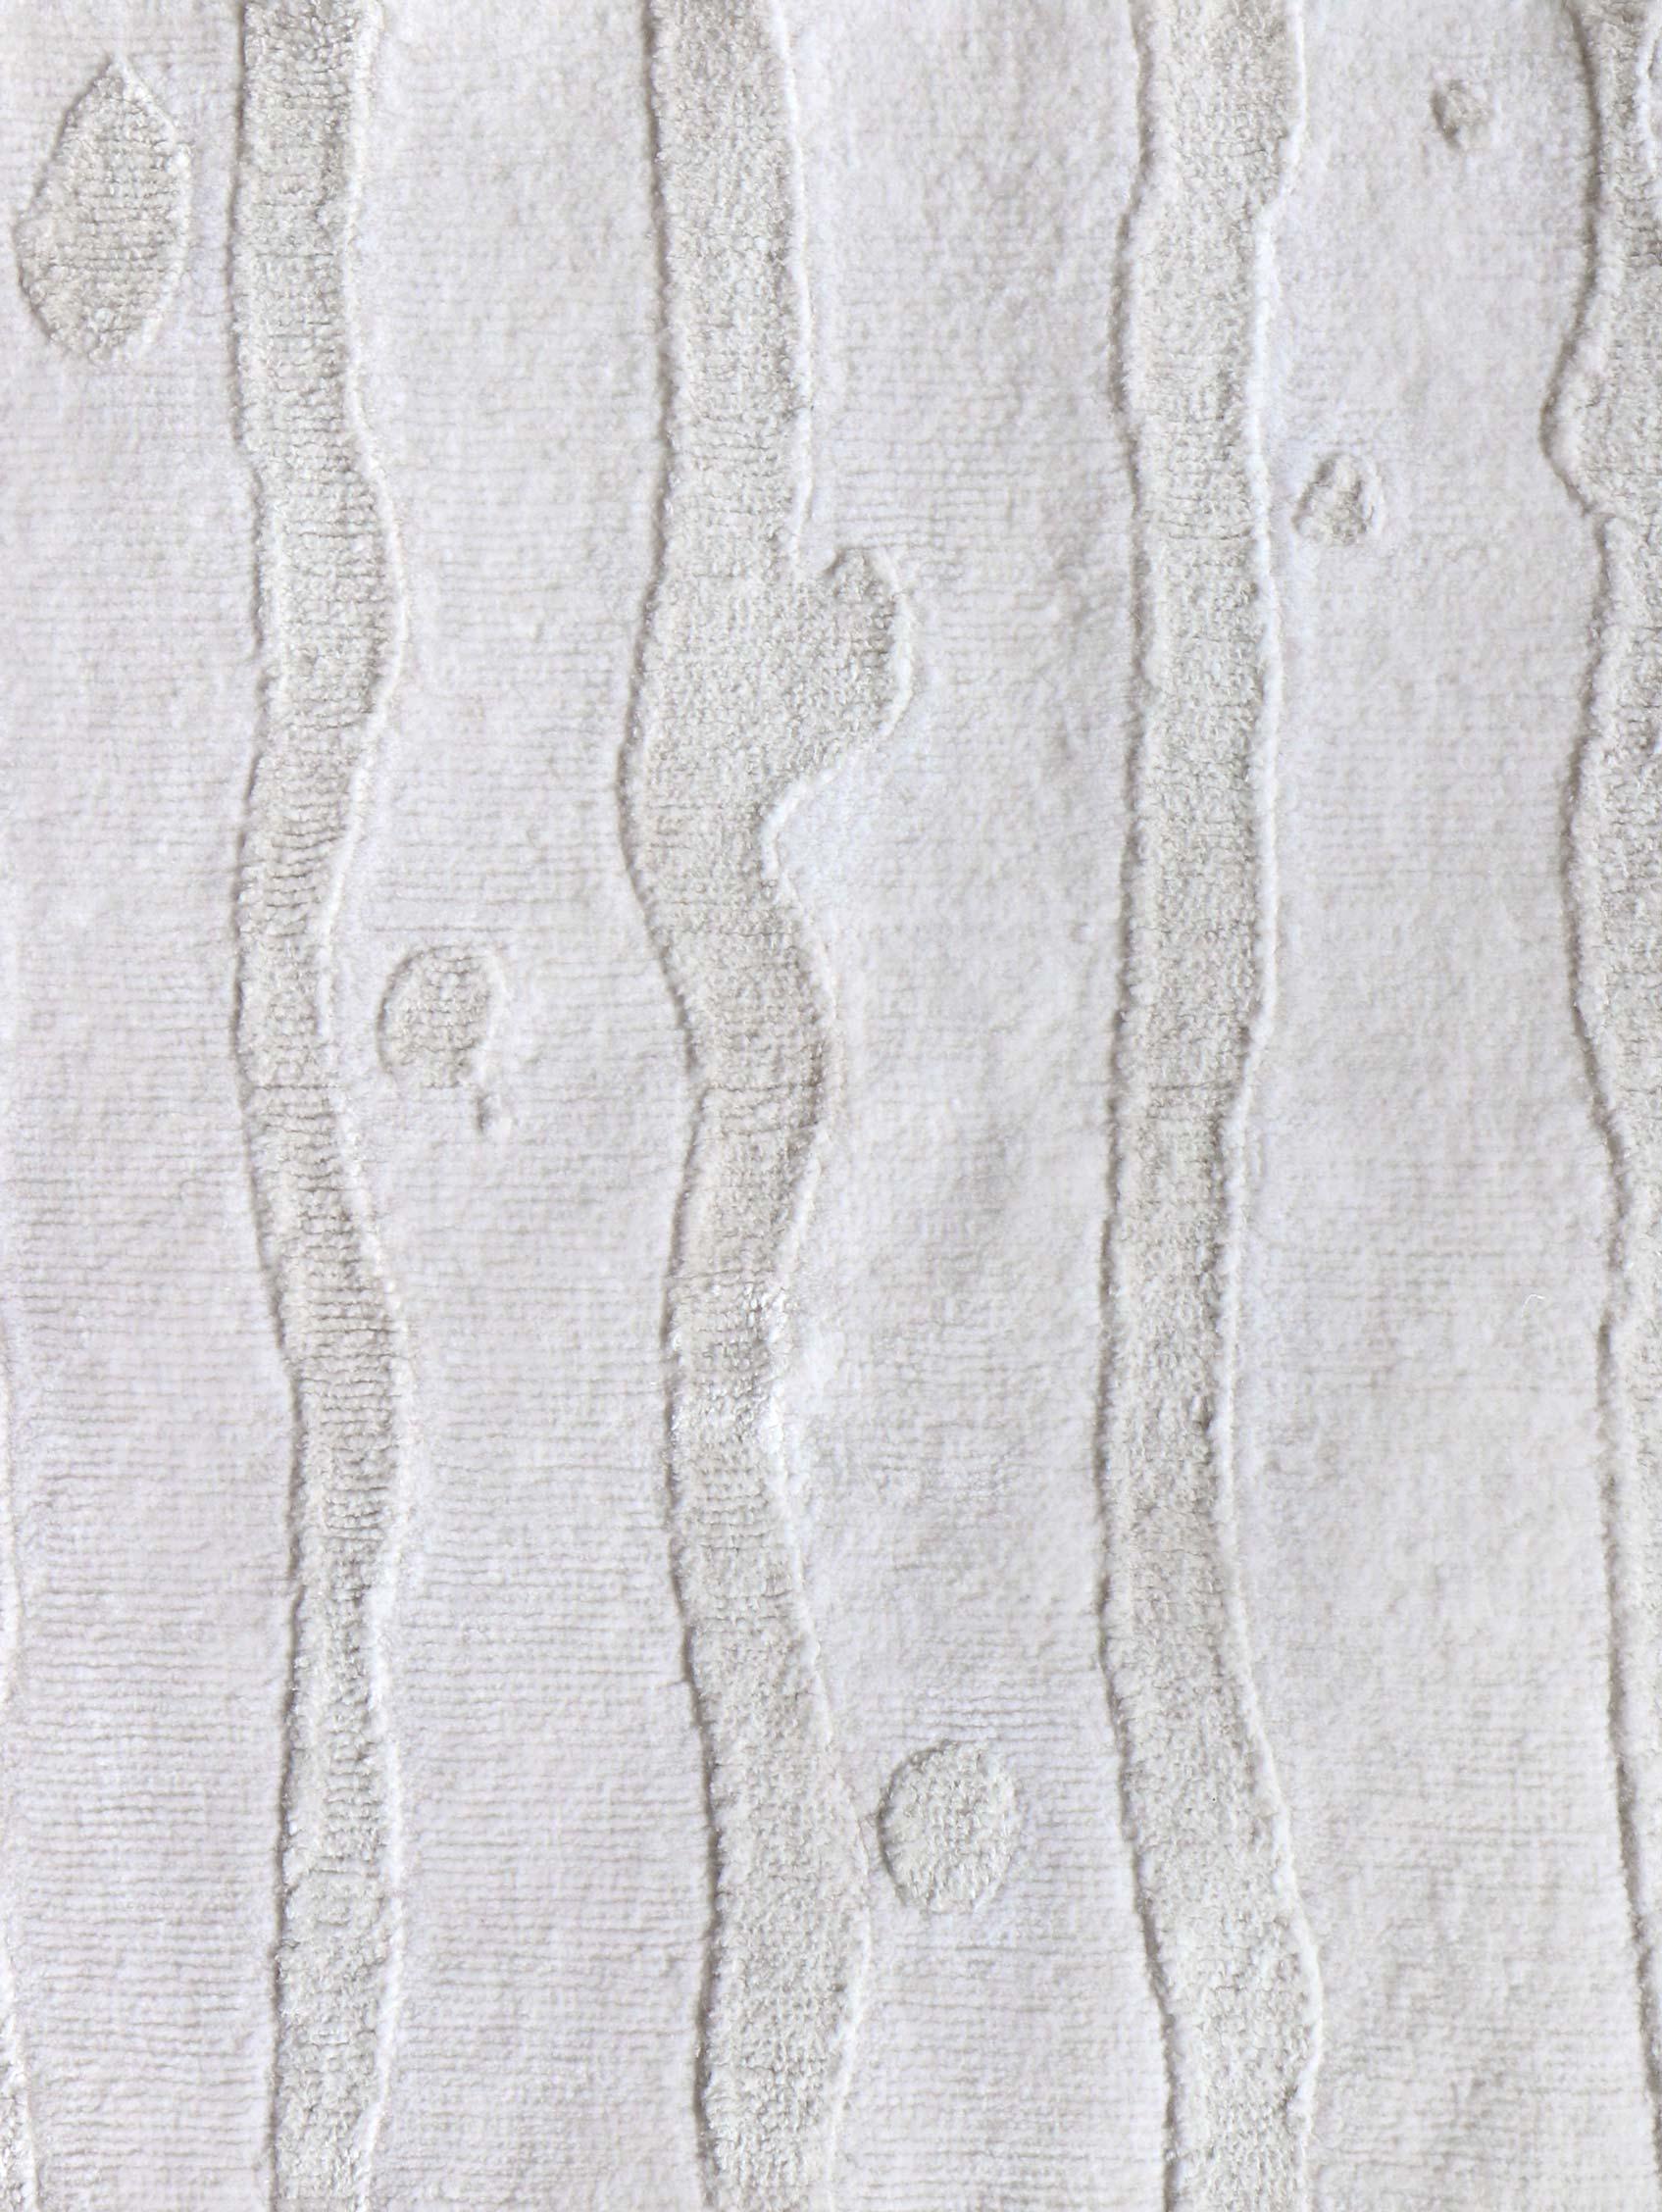 Motif du tapis : Drippy Stripe - Lefko White
MATERIAL : 70% soie / 30% laine mérinos
Qualité : Tissage croisé tibétain, tissé à la main 
Taille : 9'-0